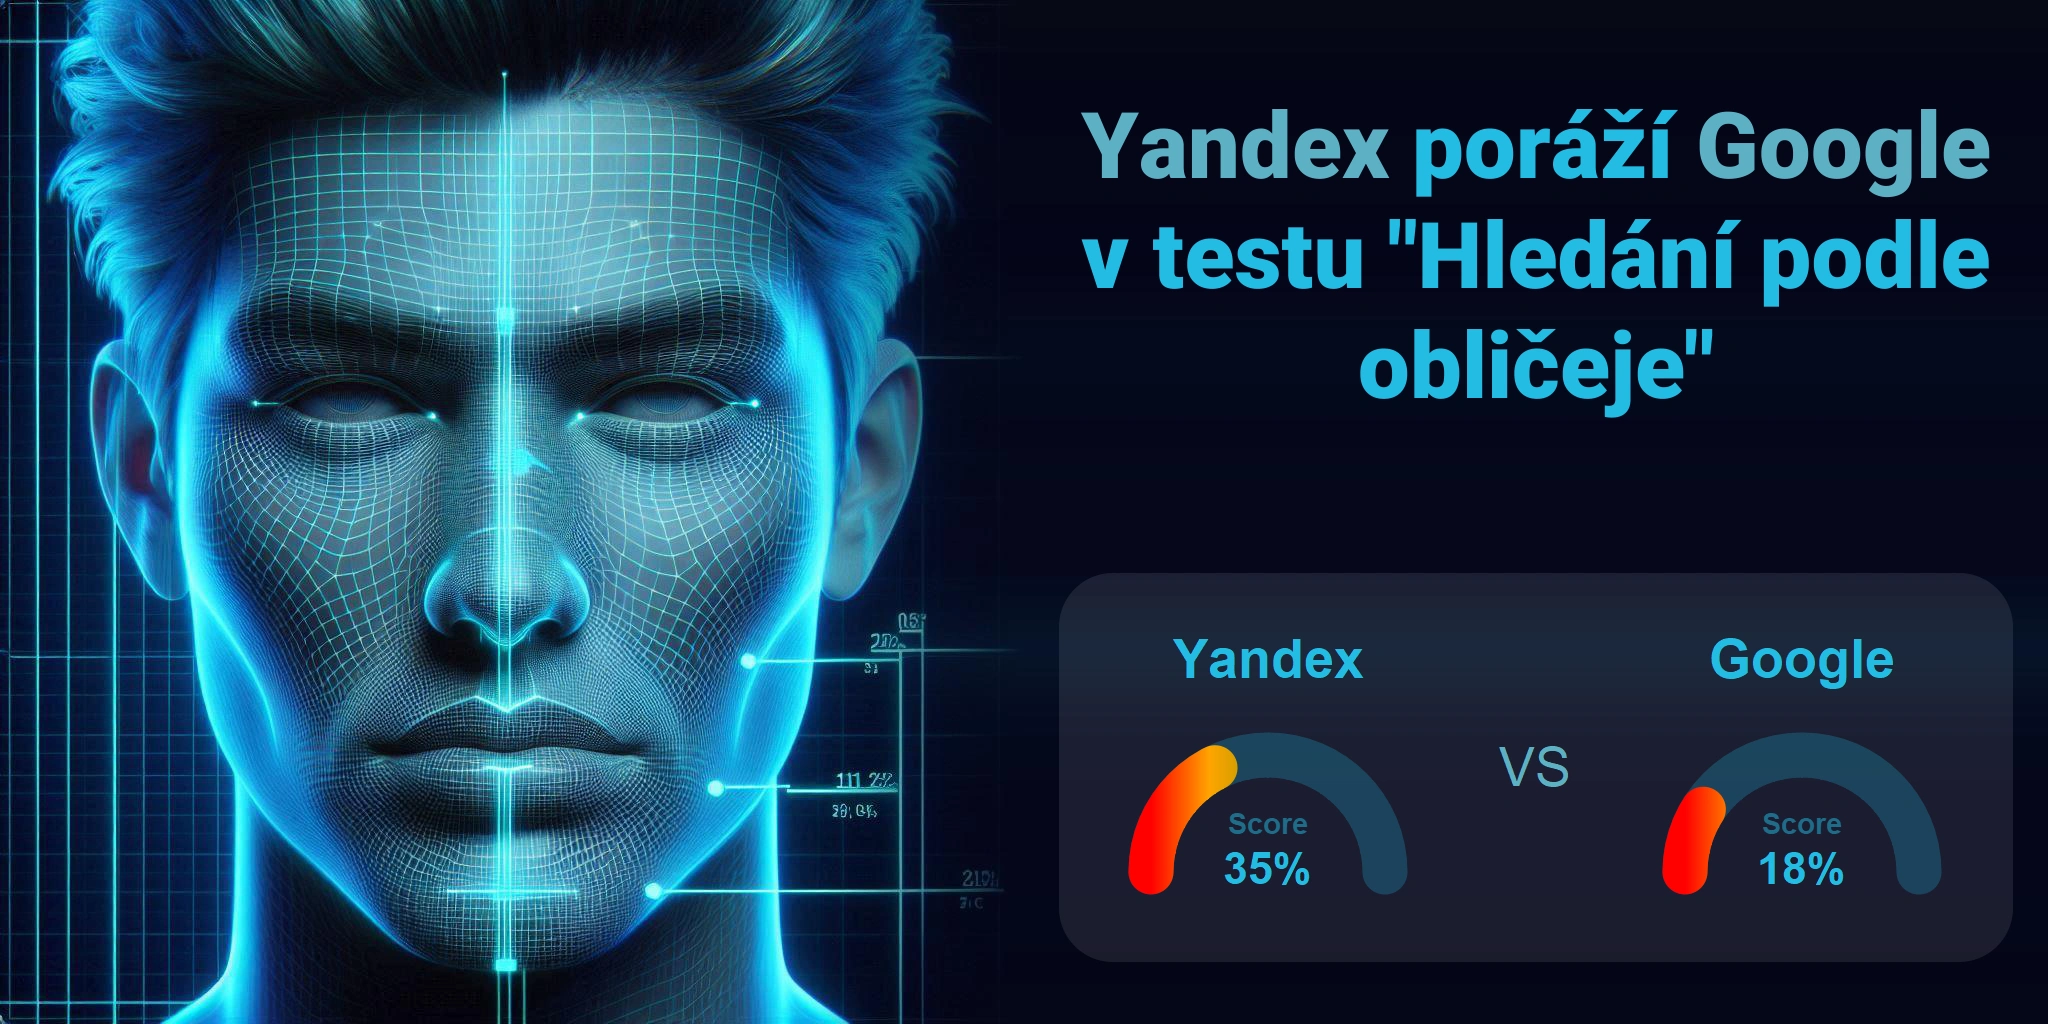 Google.com vs Yandex.com